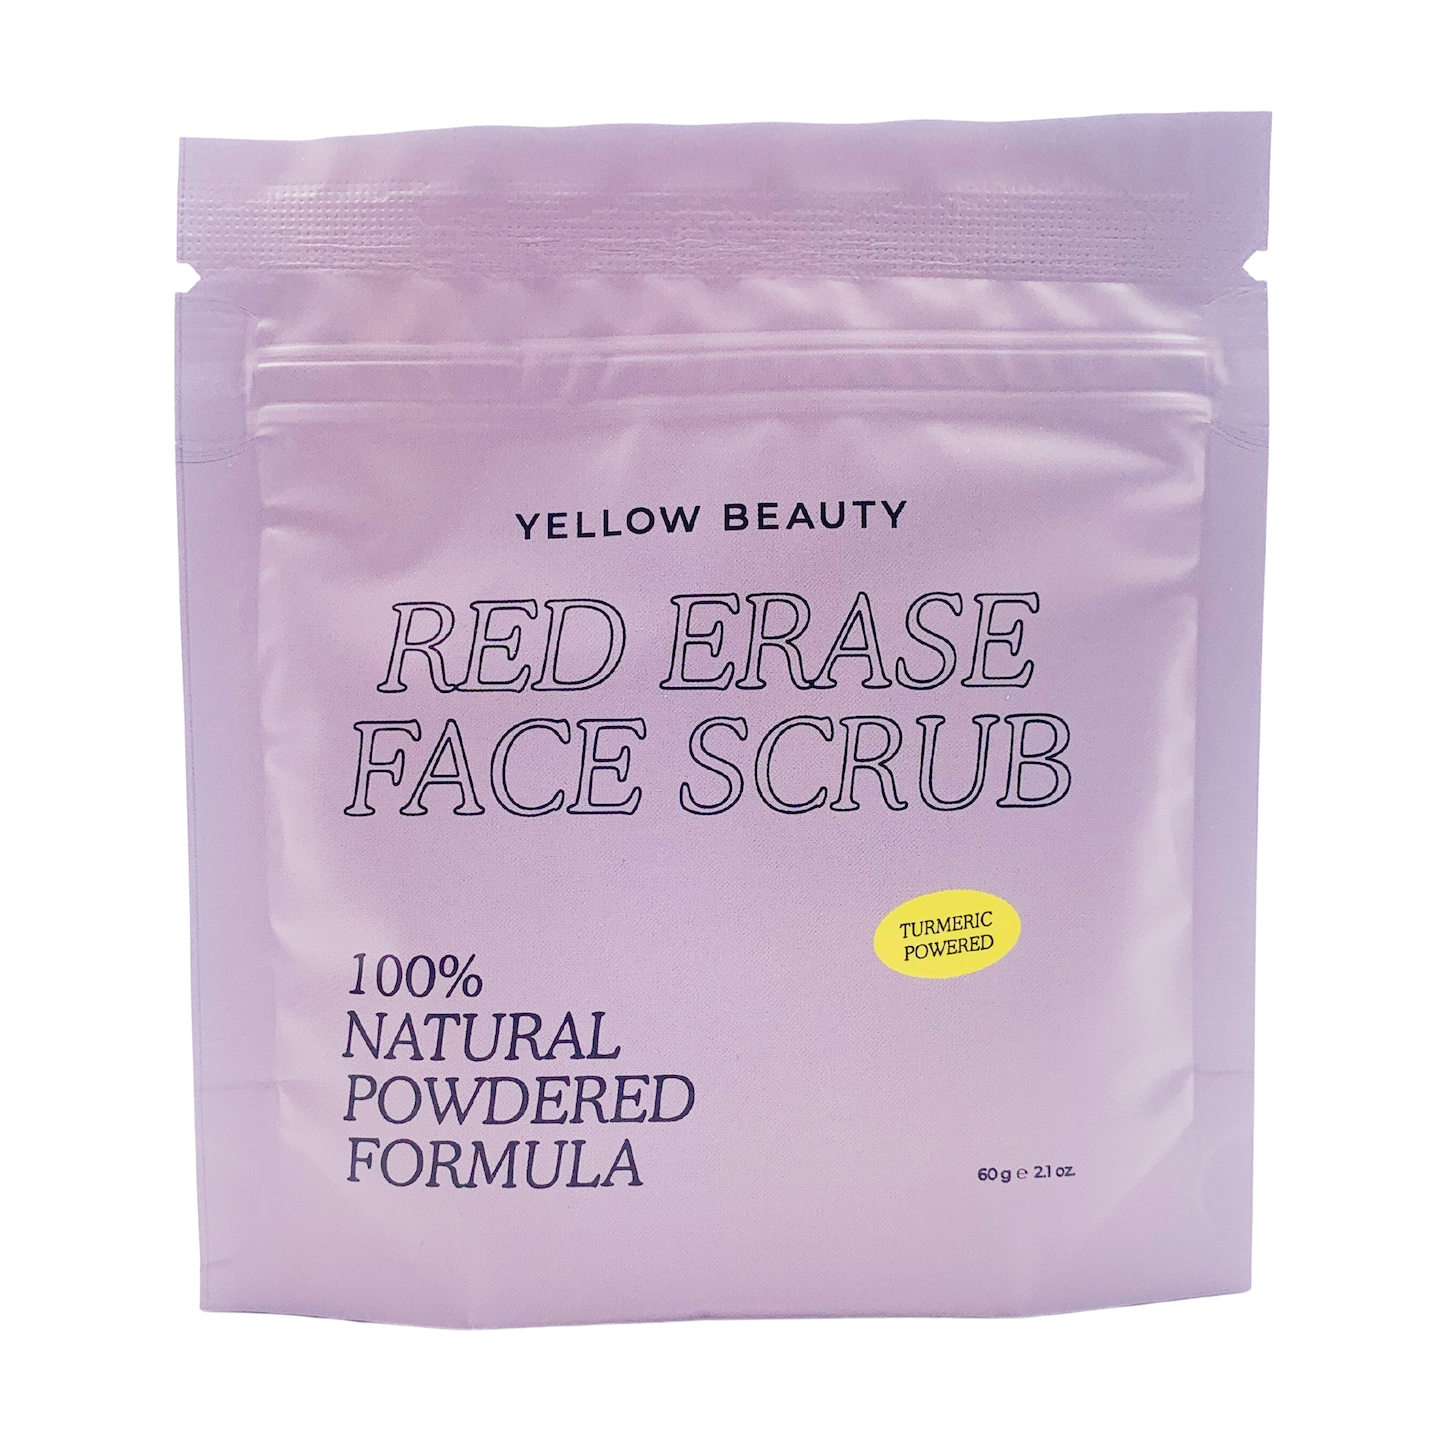 Yellow Beauty Red Erase Facial Scrub